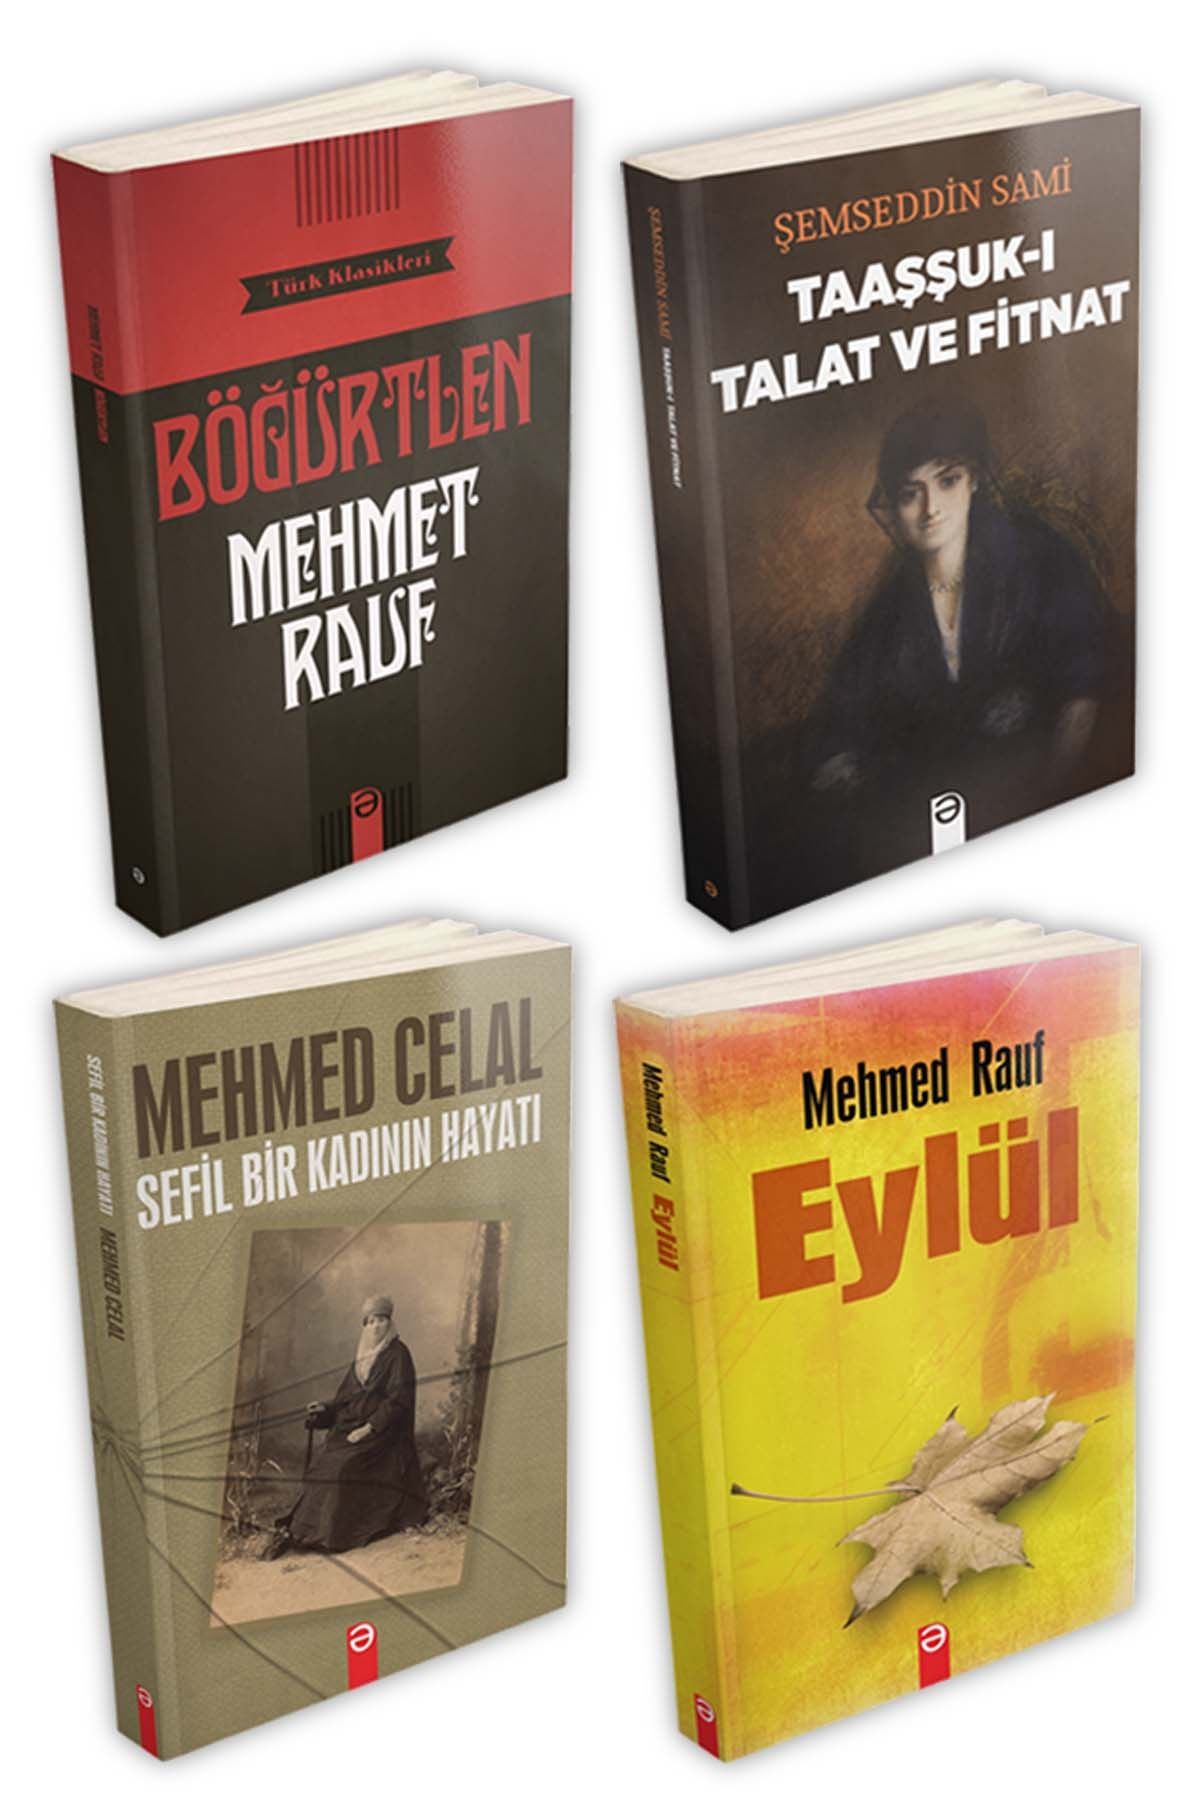 profkitap Türk Klasikleri Set 1 (4 Kitap)